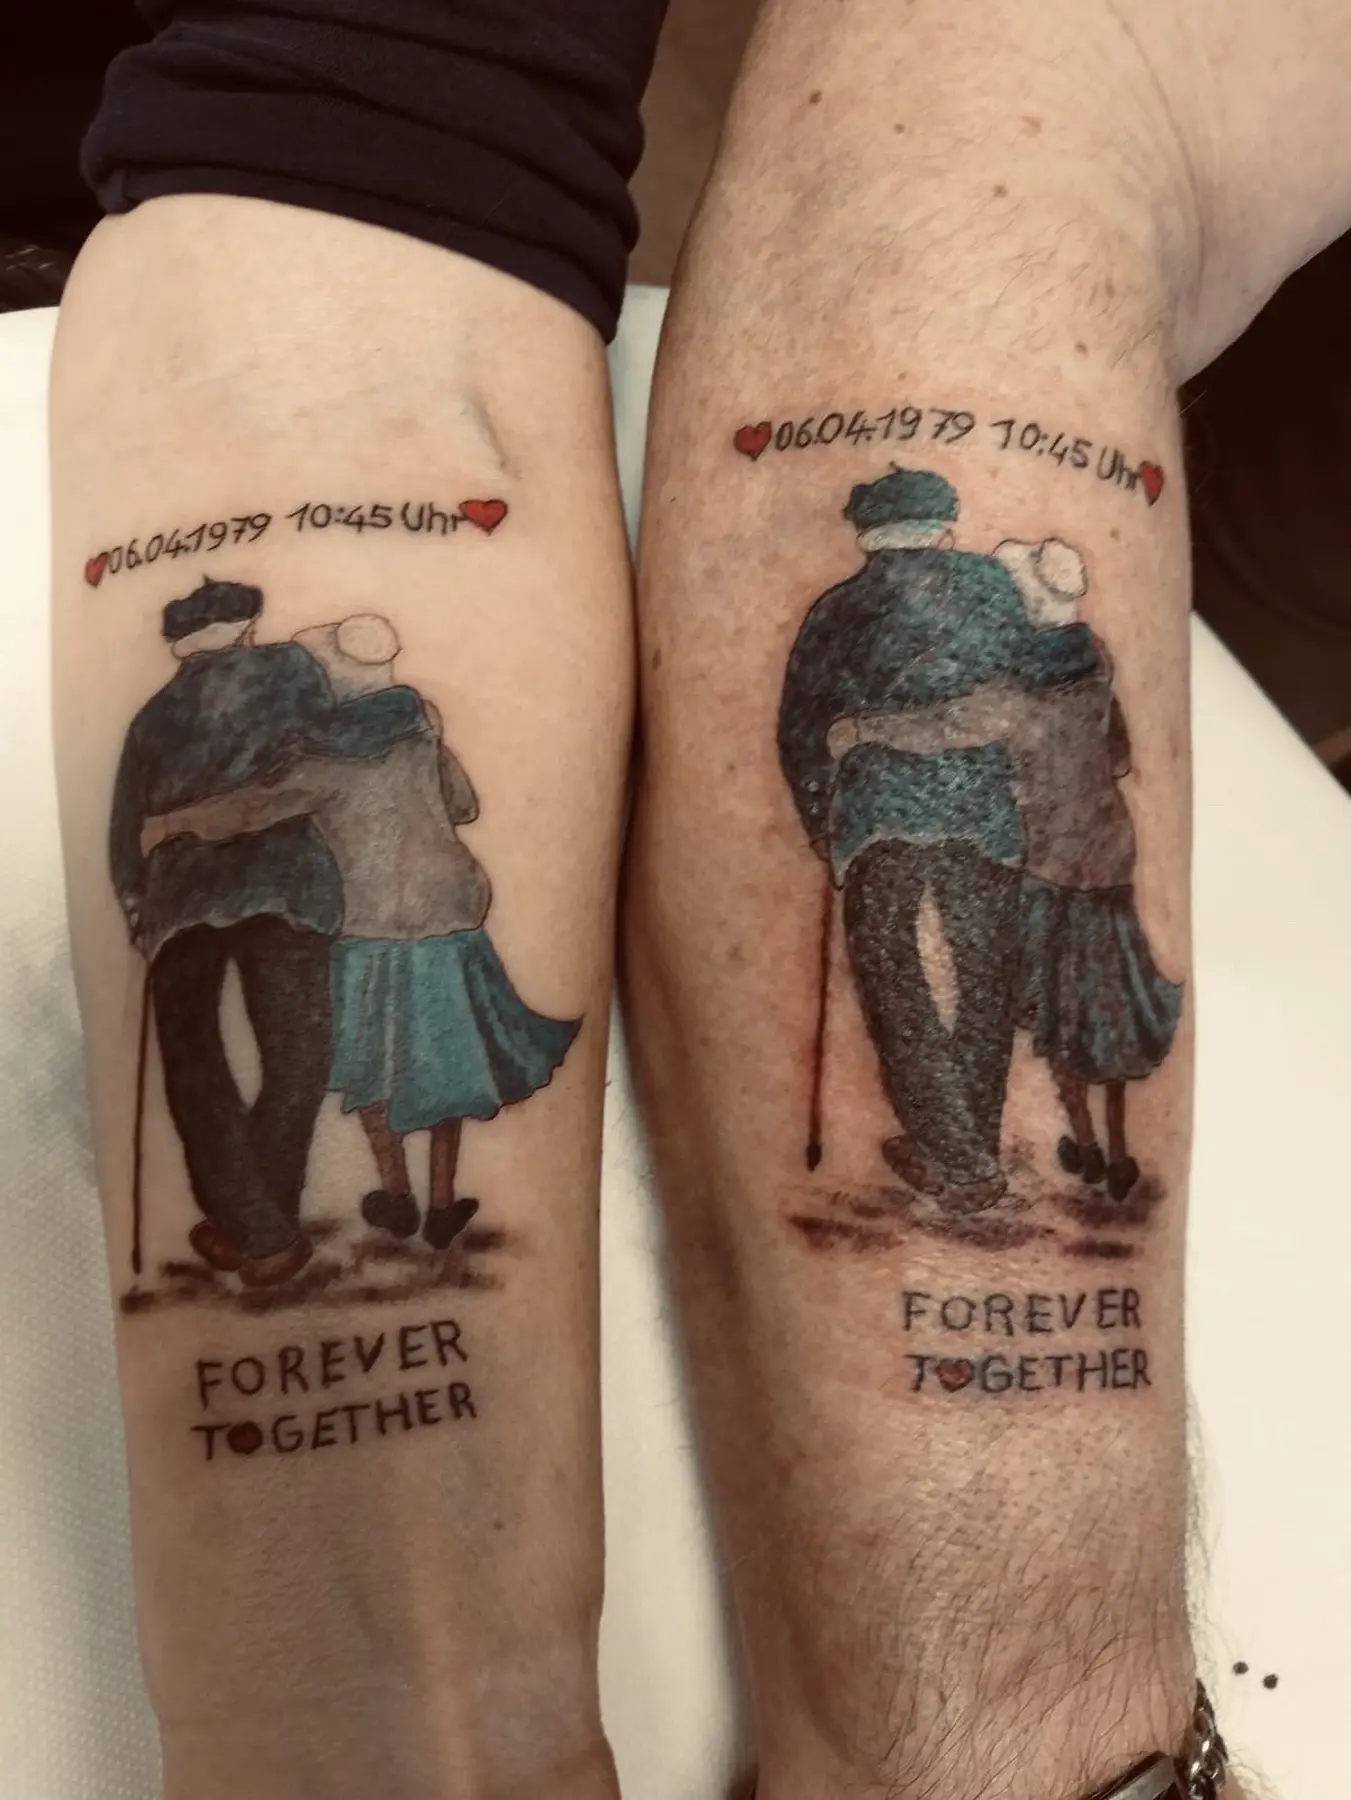 Ingesś Tattoo&Piercing Stübchen Tattoos für immer zusammen auf den Armen des Paares